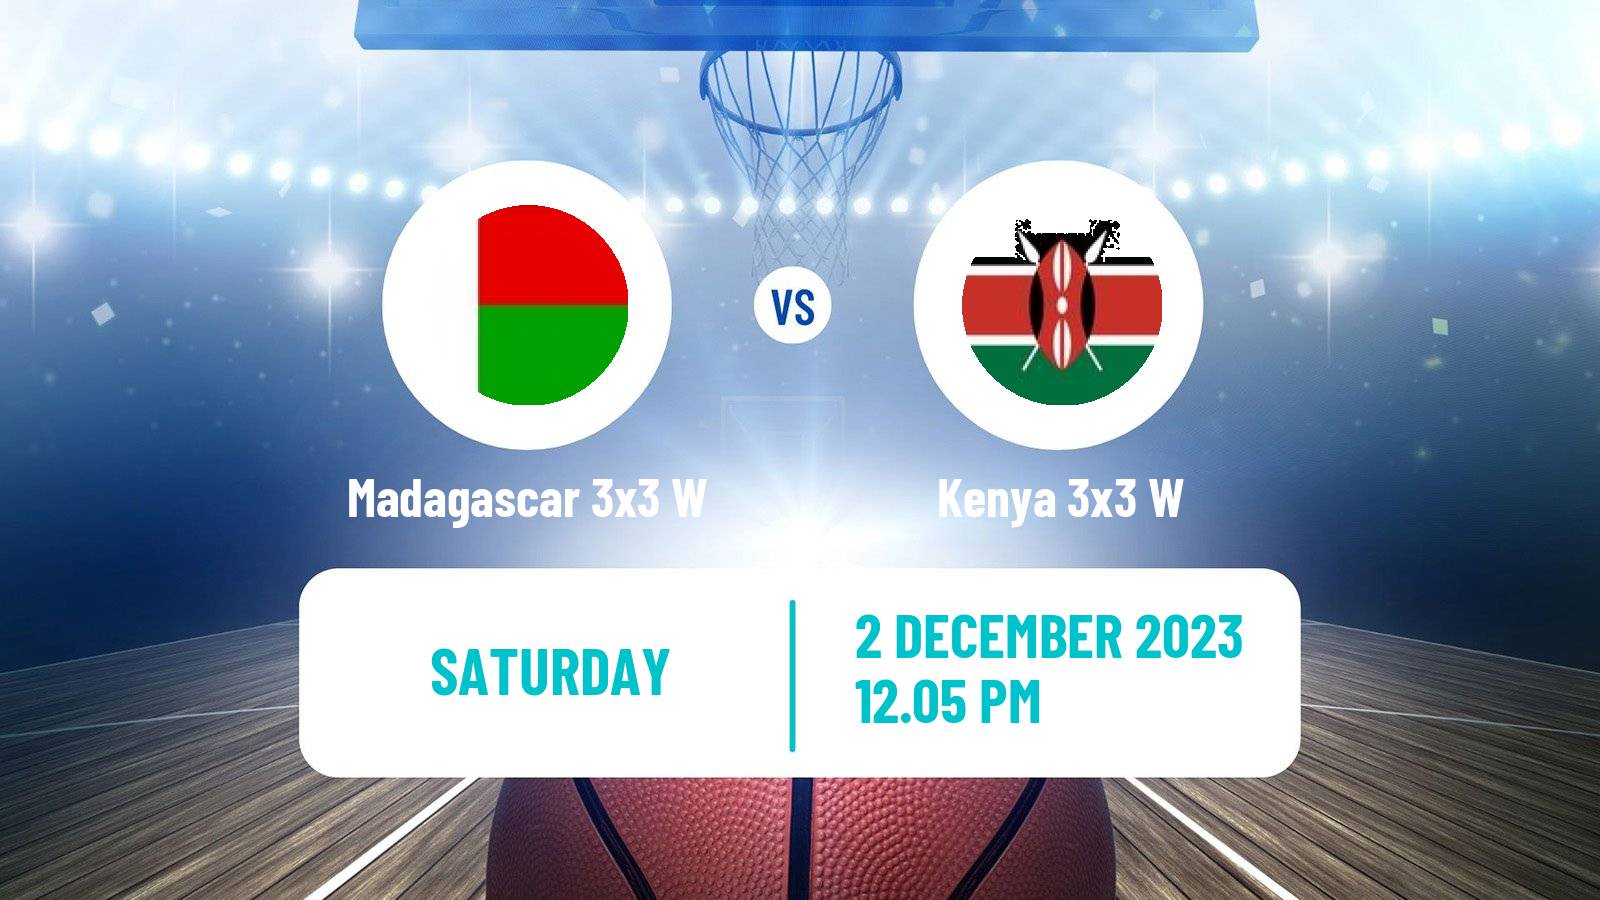 Basketball Africa Cup 3x3 Women Madagascar 3x3 W - Kenya 3x3 W